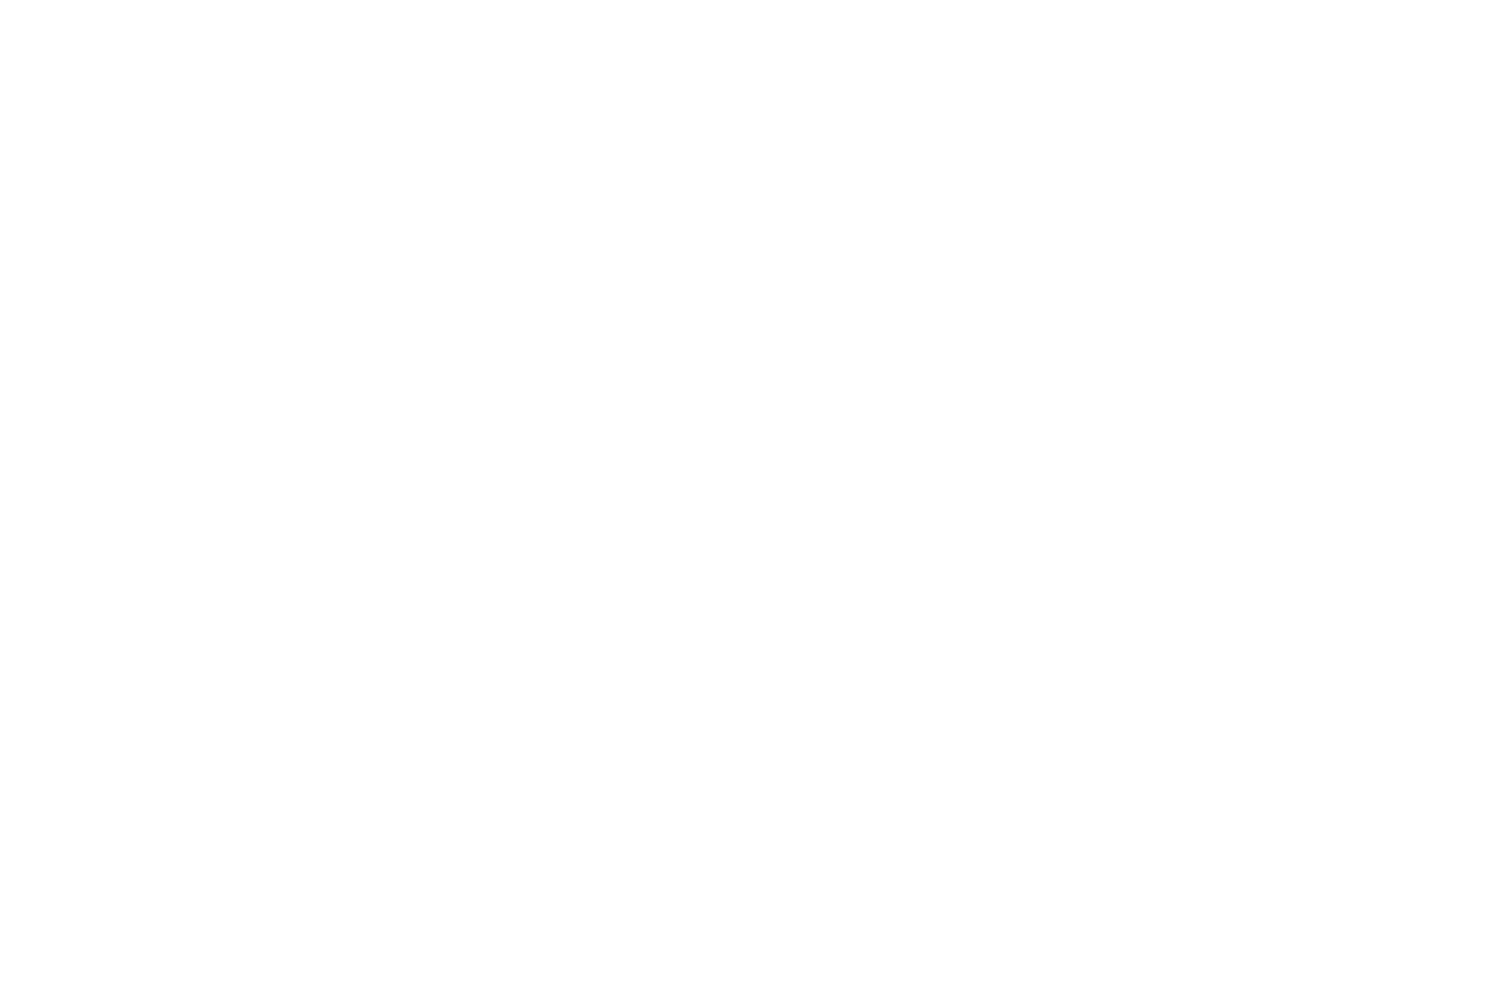 BALAYI SUİT | Sapanca Bamboolow Resort - Sapanca Gölü Kenarında Konaklama